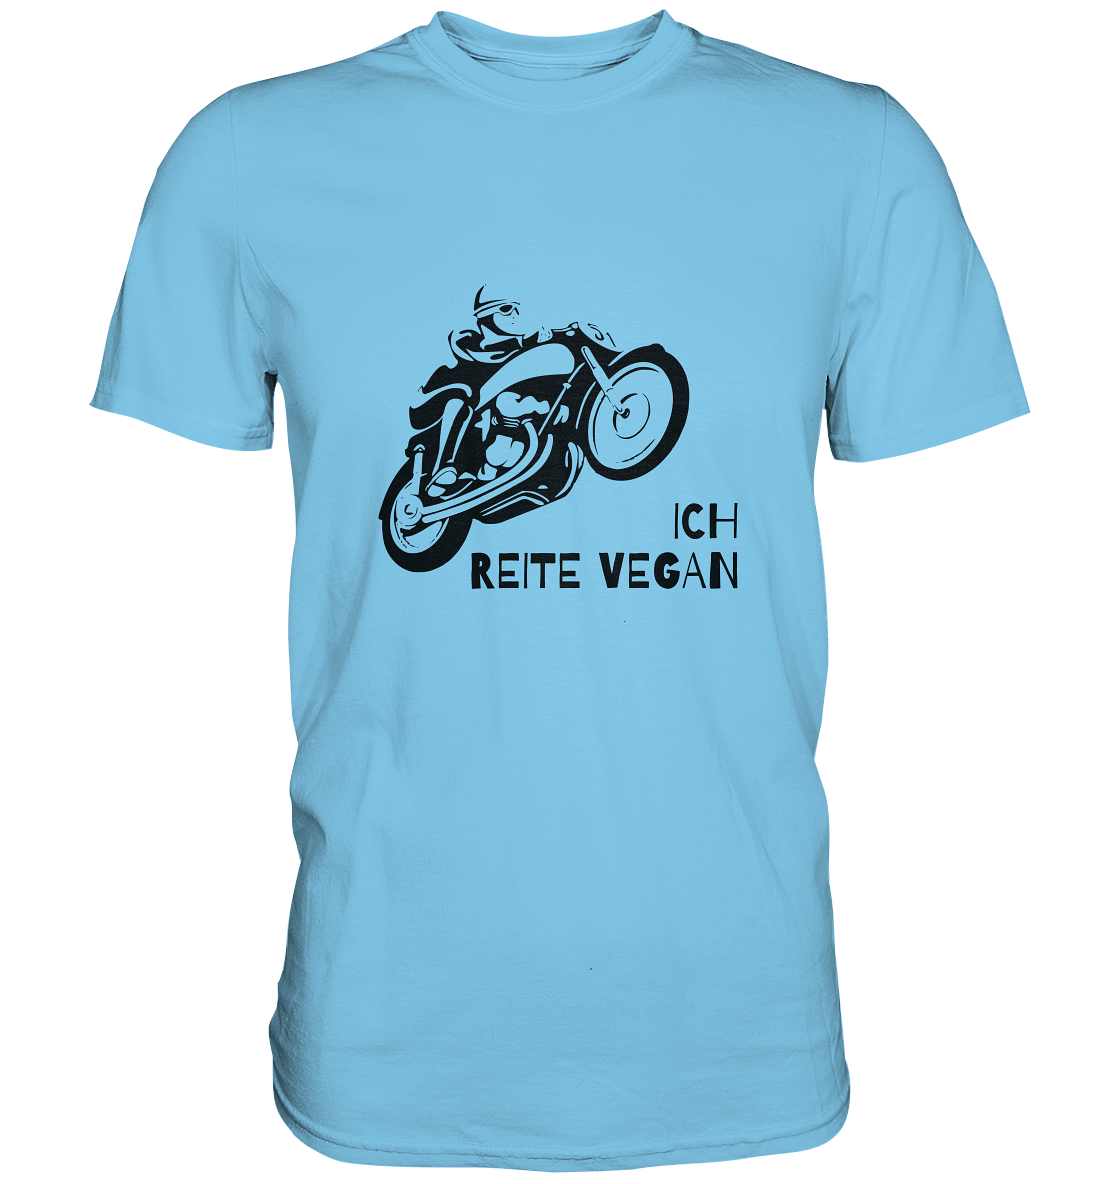 T-Shirt, Herren, Rundhals, mit Aufdruck Motorrad und Spruch "Ich reite vegan", hell blau